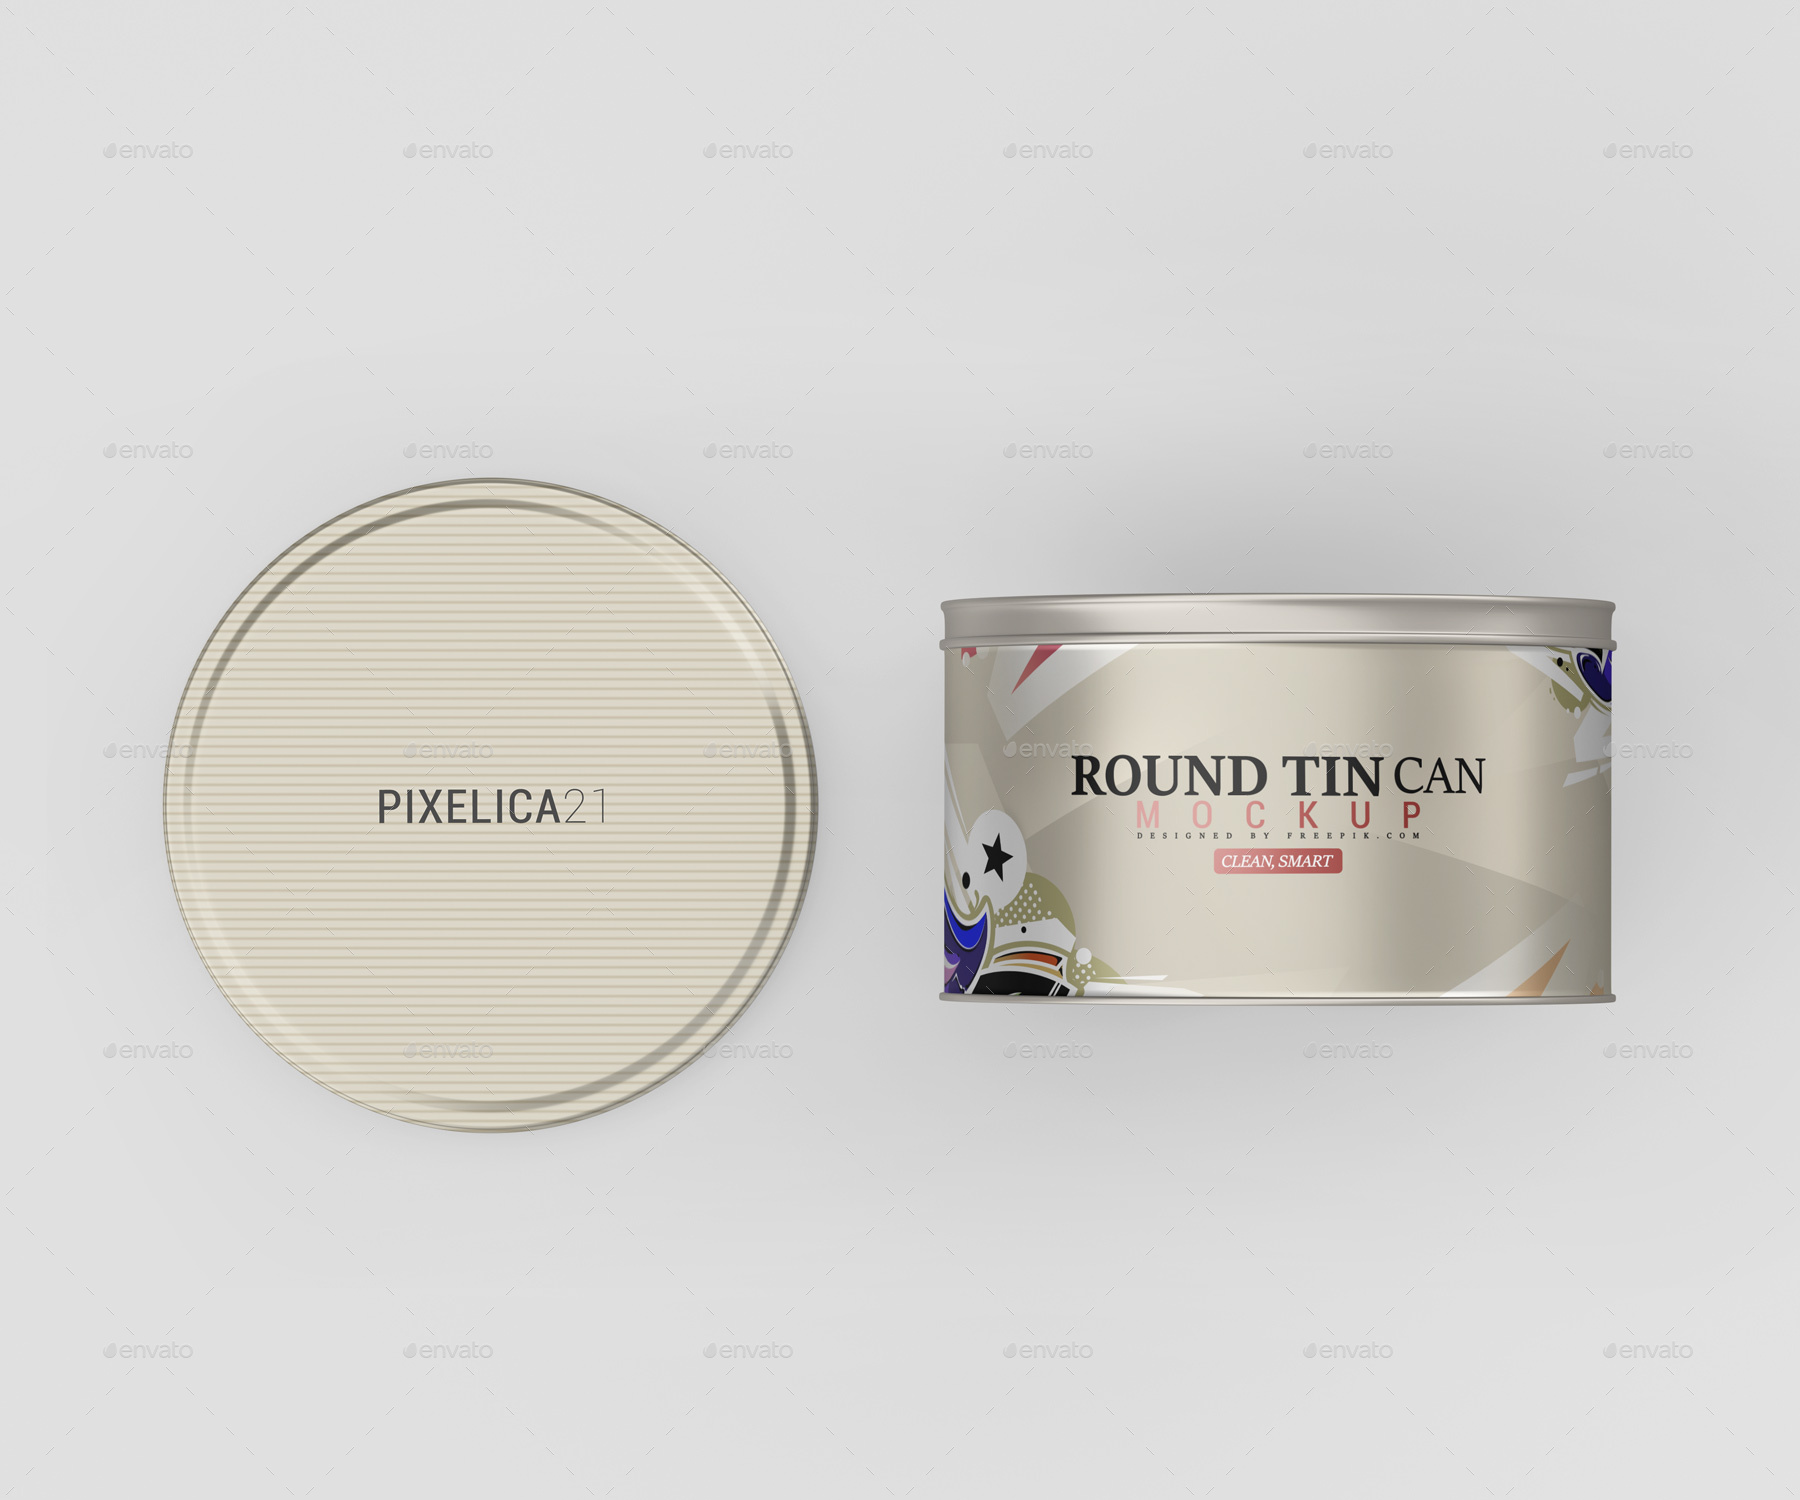 9个不同角度的圆形食品锡罐罐头包装设计样机PSD模板 Rou